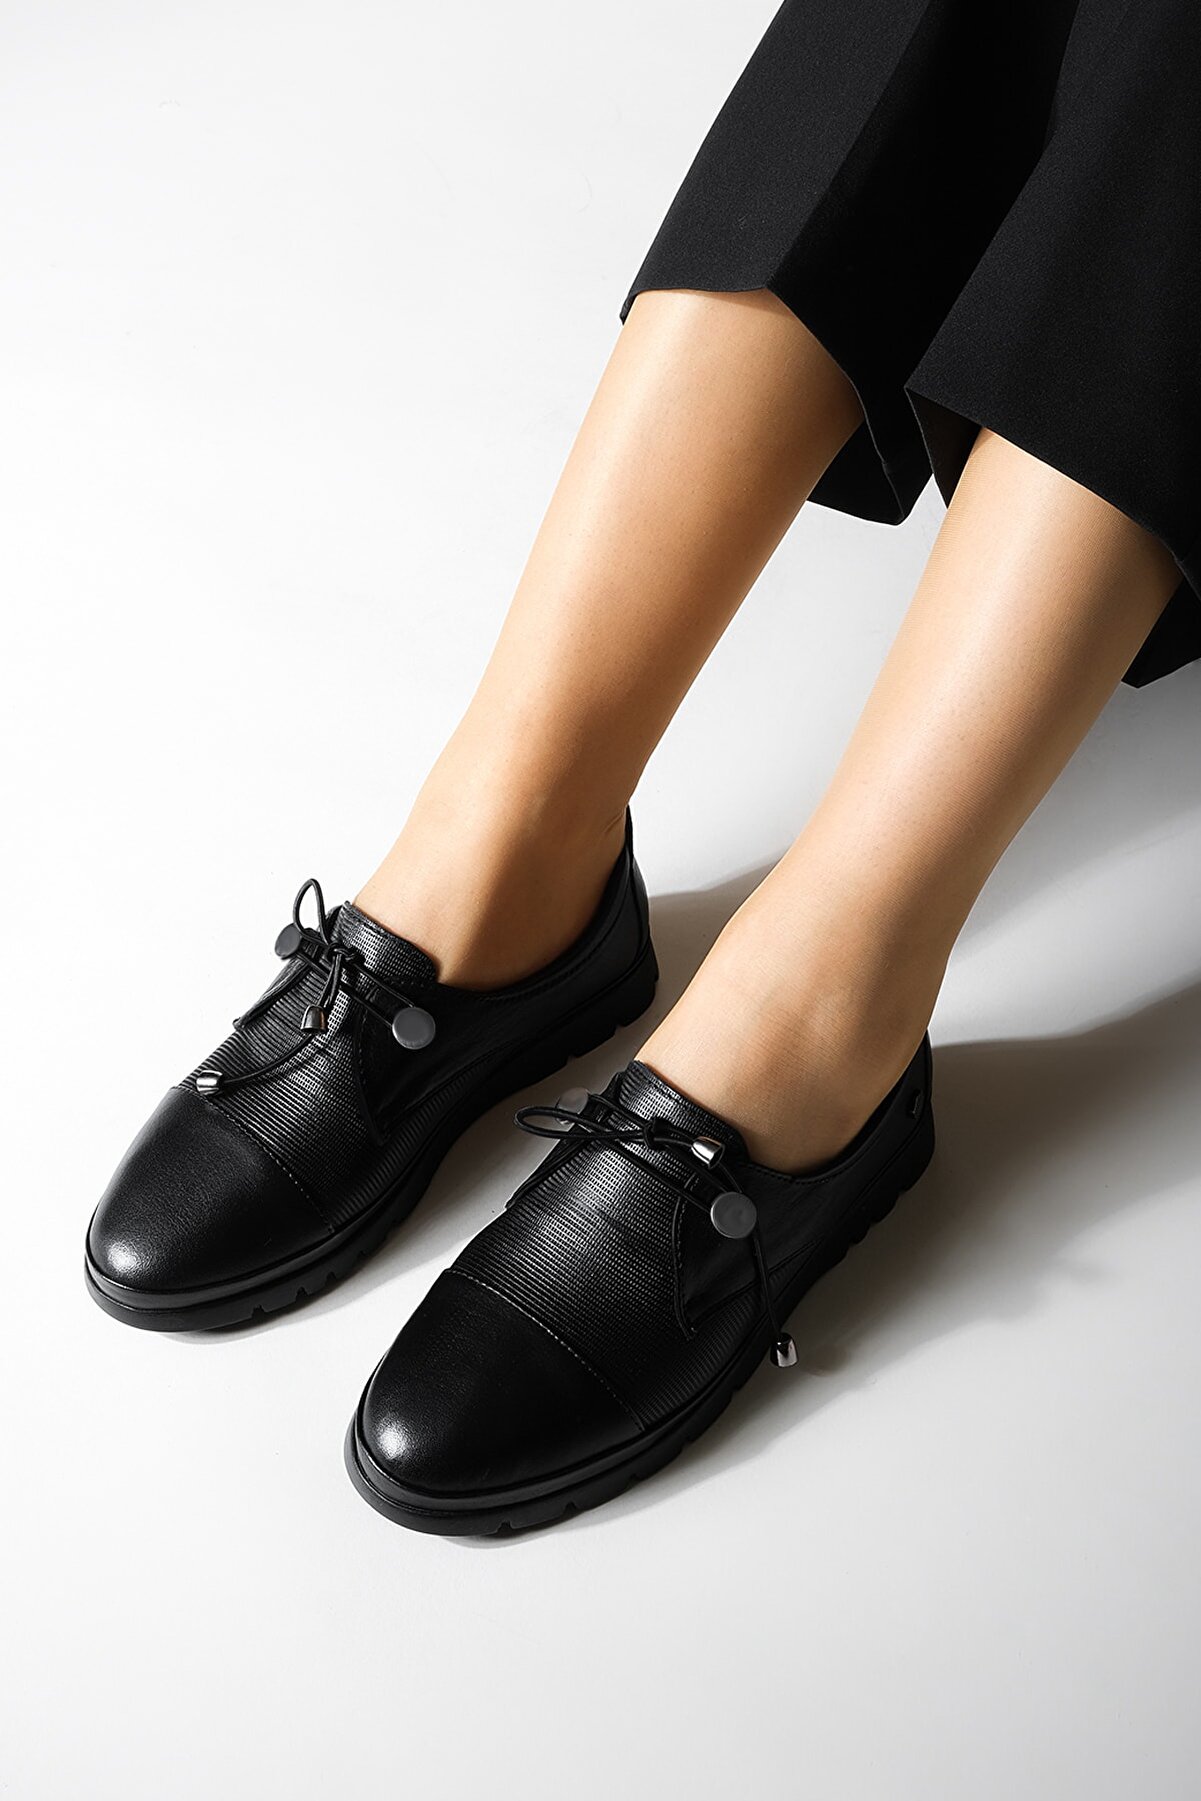 Marjin Kadın Hakiki Deri Comfort Günlük Ayakkabı Bağcıklı Demas Siyah